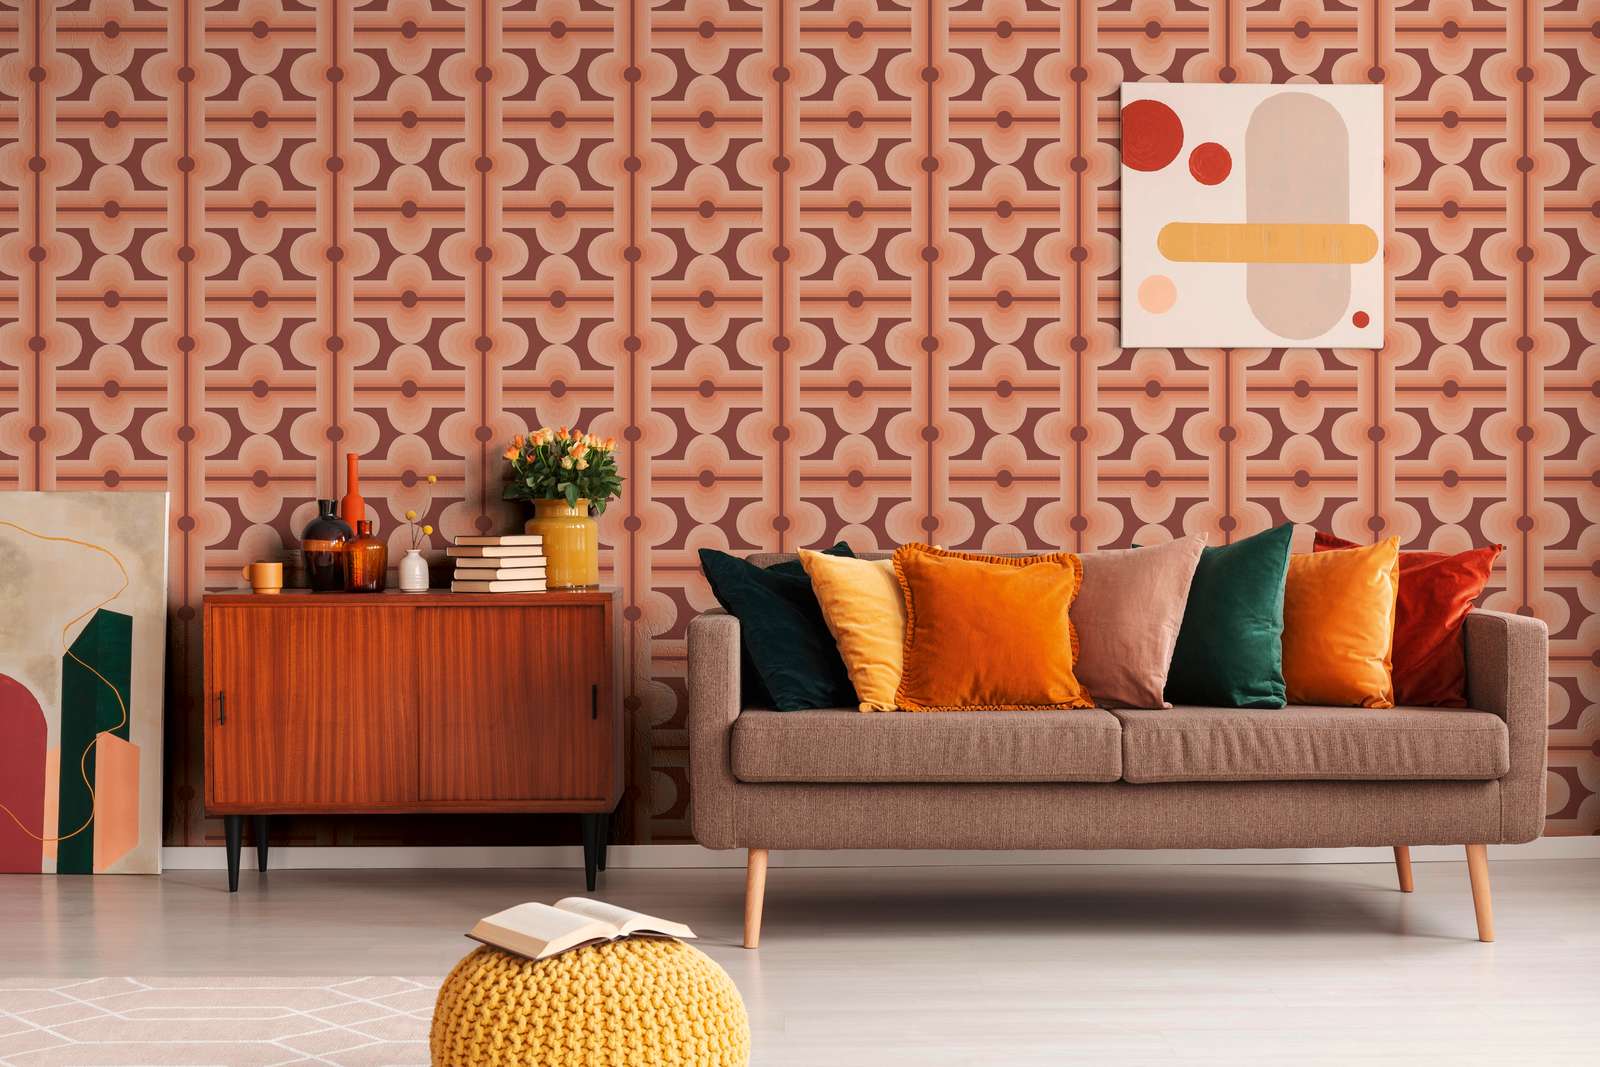             Papel pintado no tejido con motivos abstractos de estilo retro - rojo, naranja
        